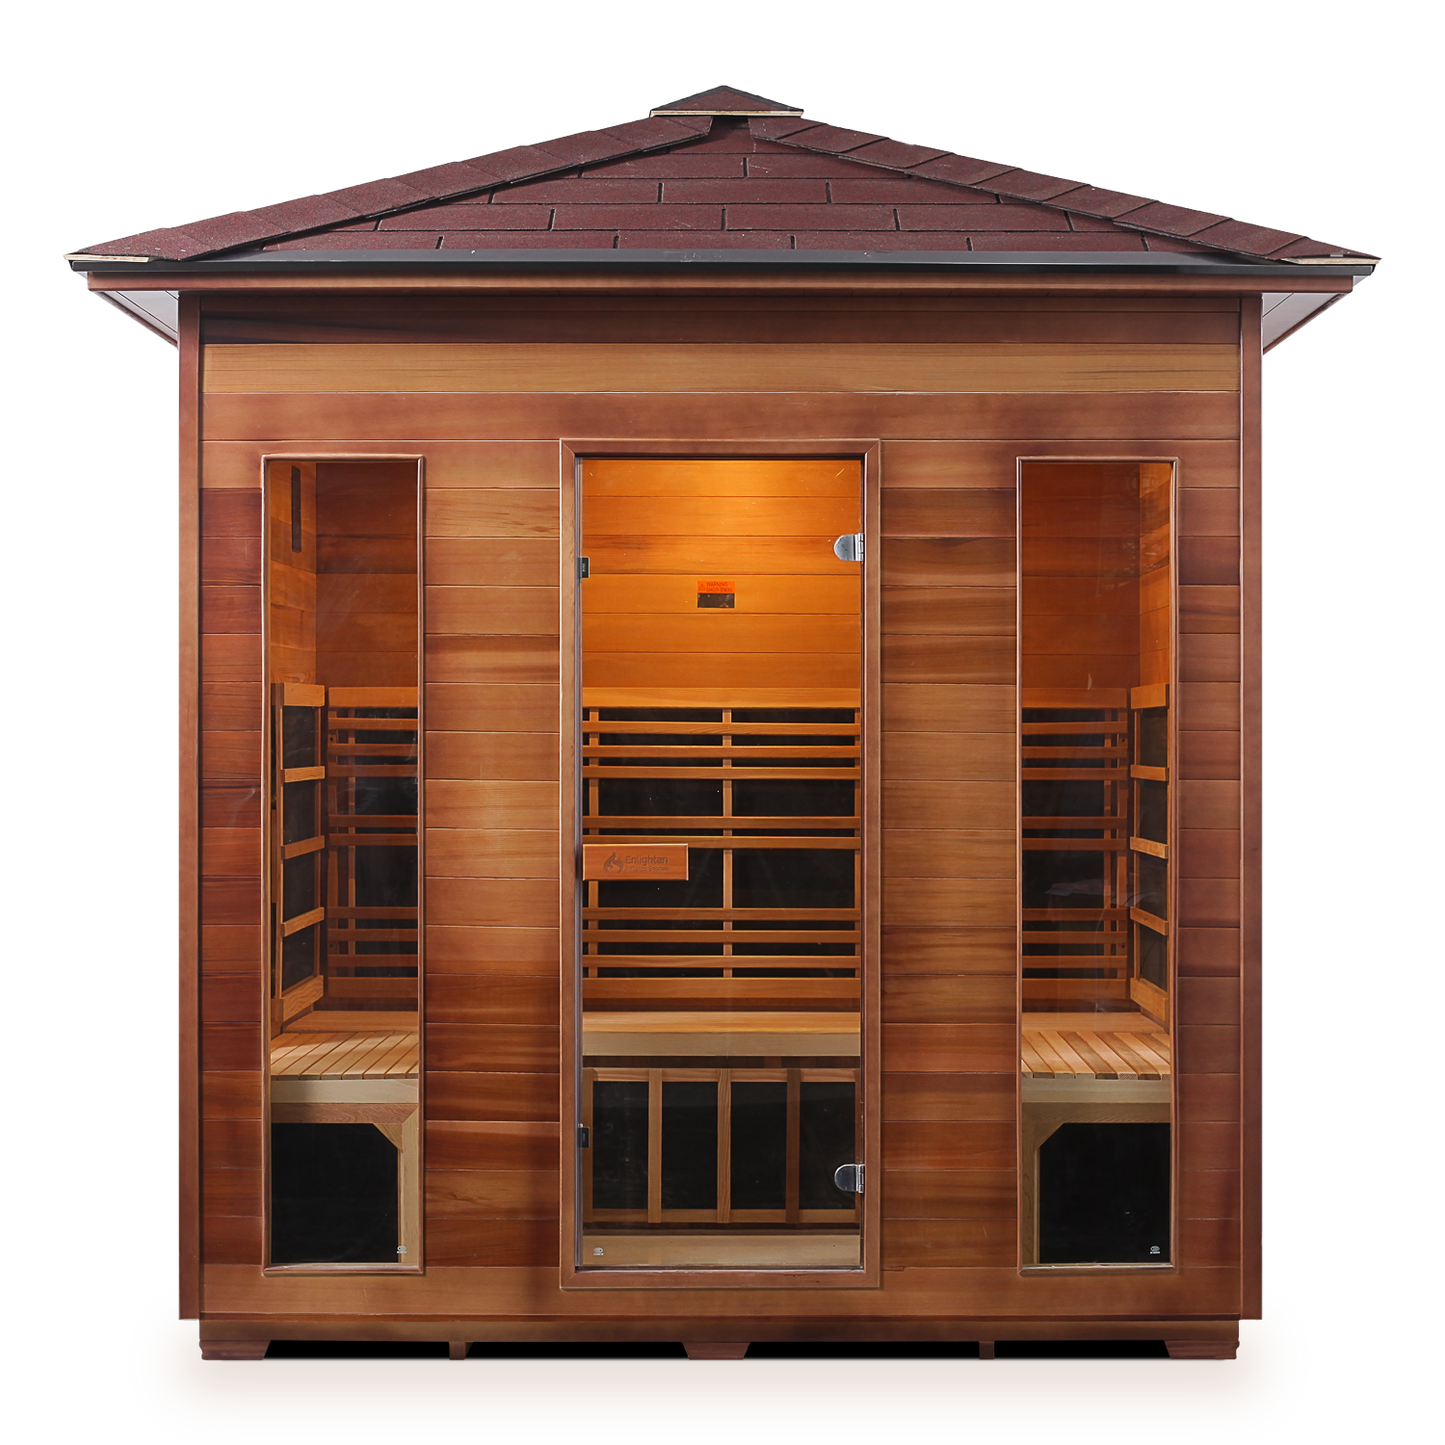 Rustic 5 Outdoor Infrared Sauna